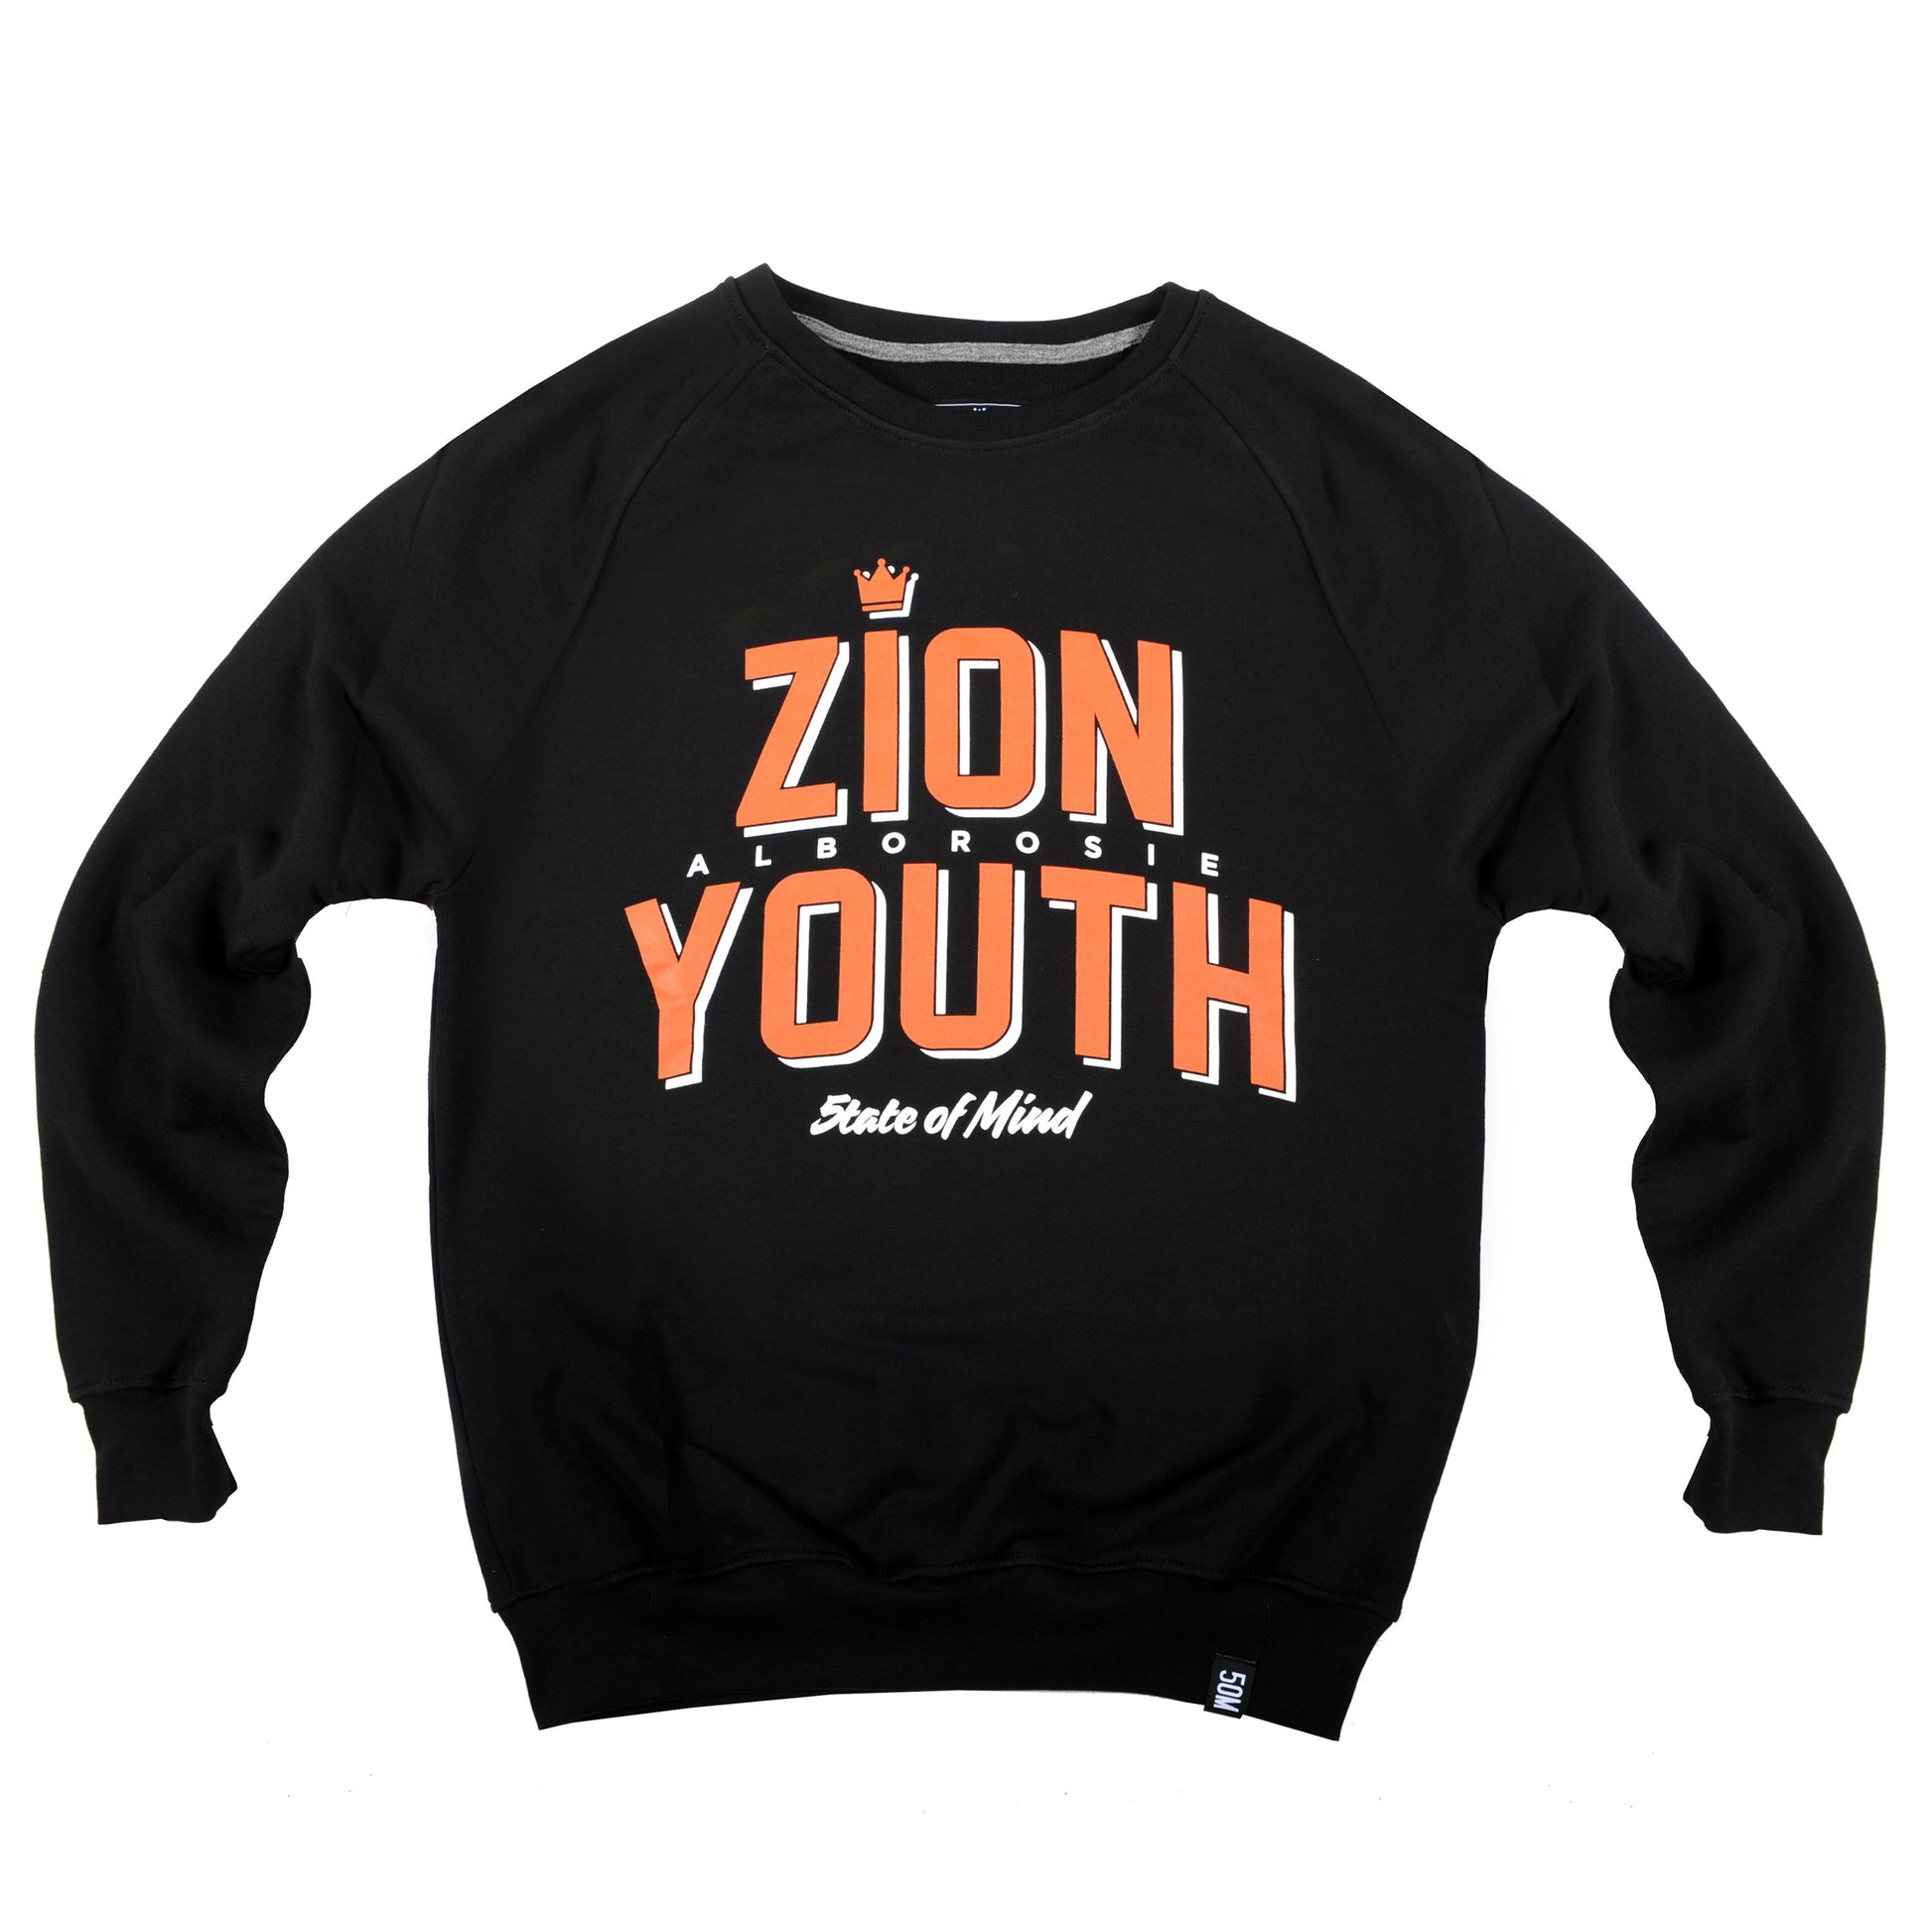 "ZION YOUTH 5OMxALBOROSIE" <br /> sweatshirt black